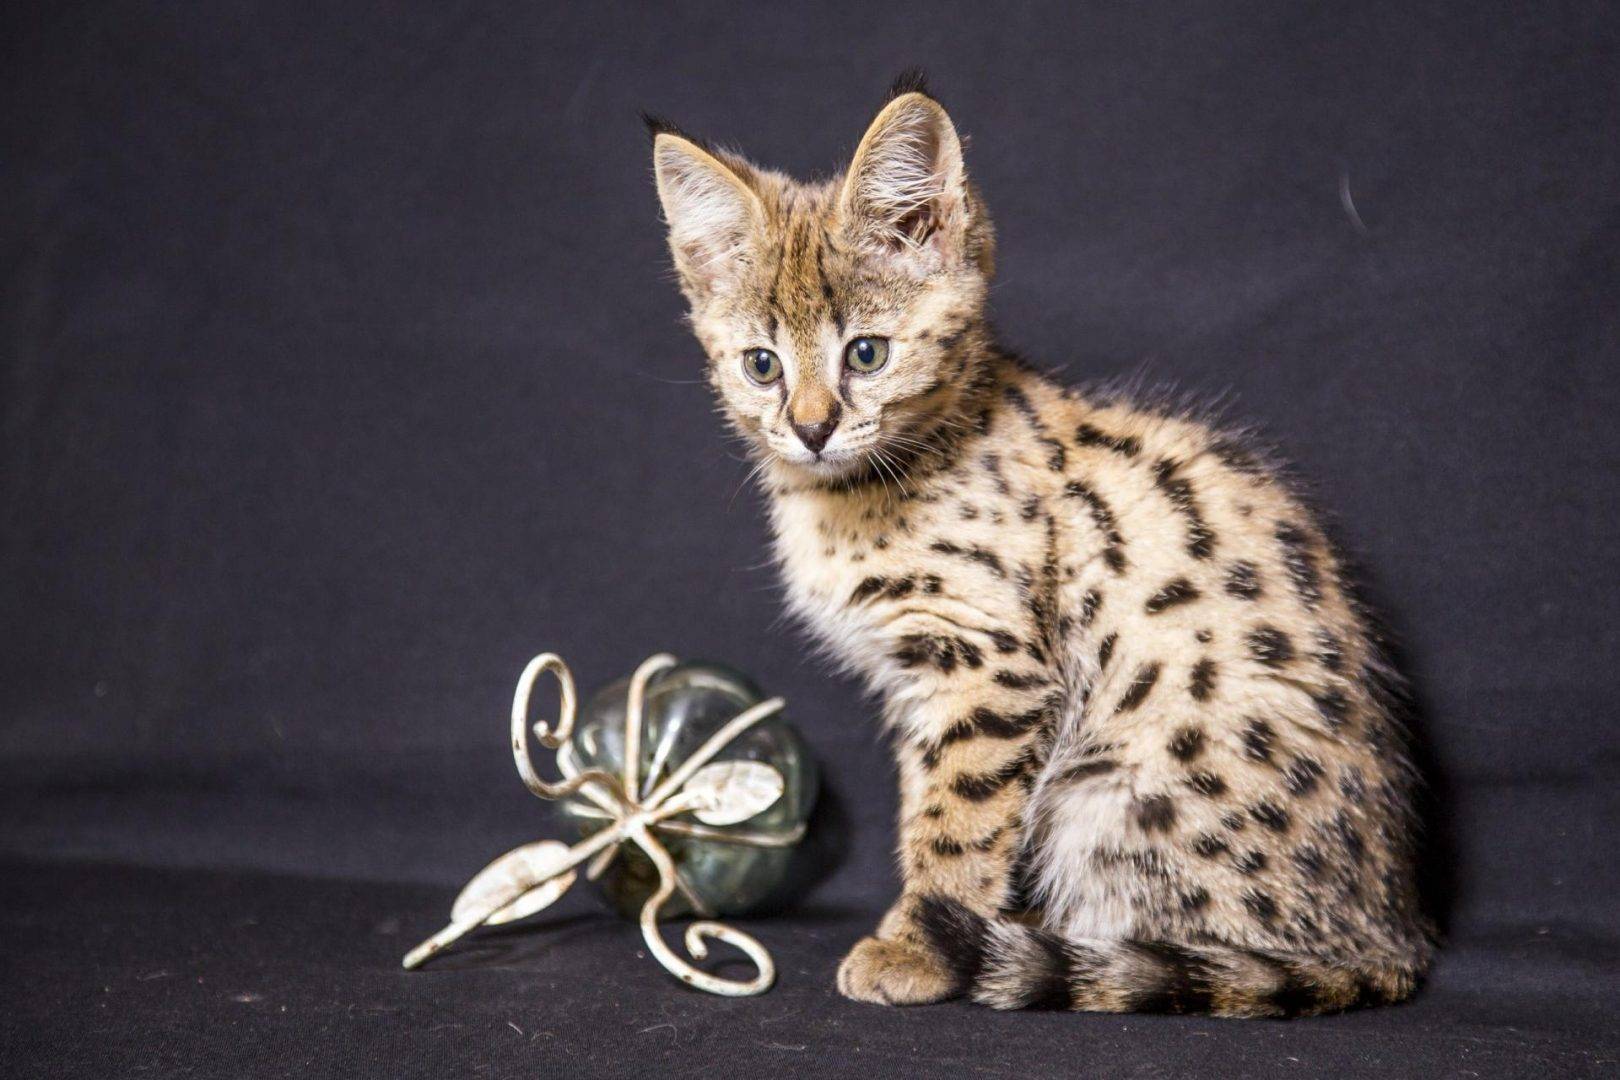 Самые красивые породы кошек в мире: топ-10 дорогих животных с фото и названиями